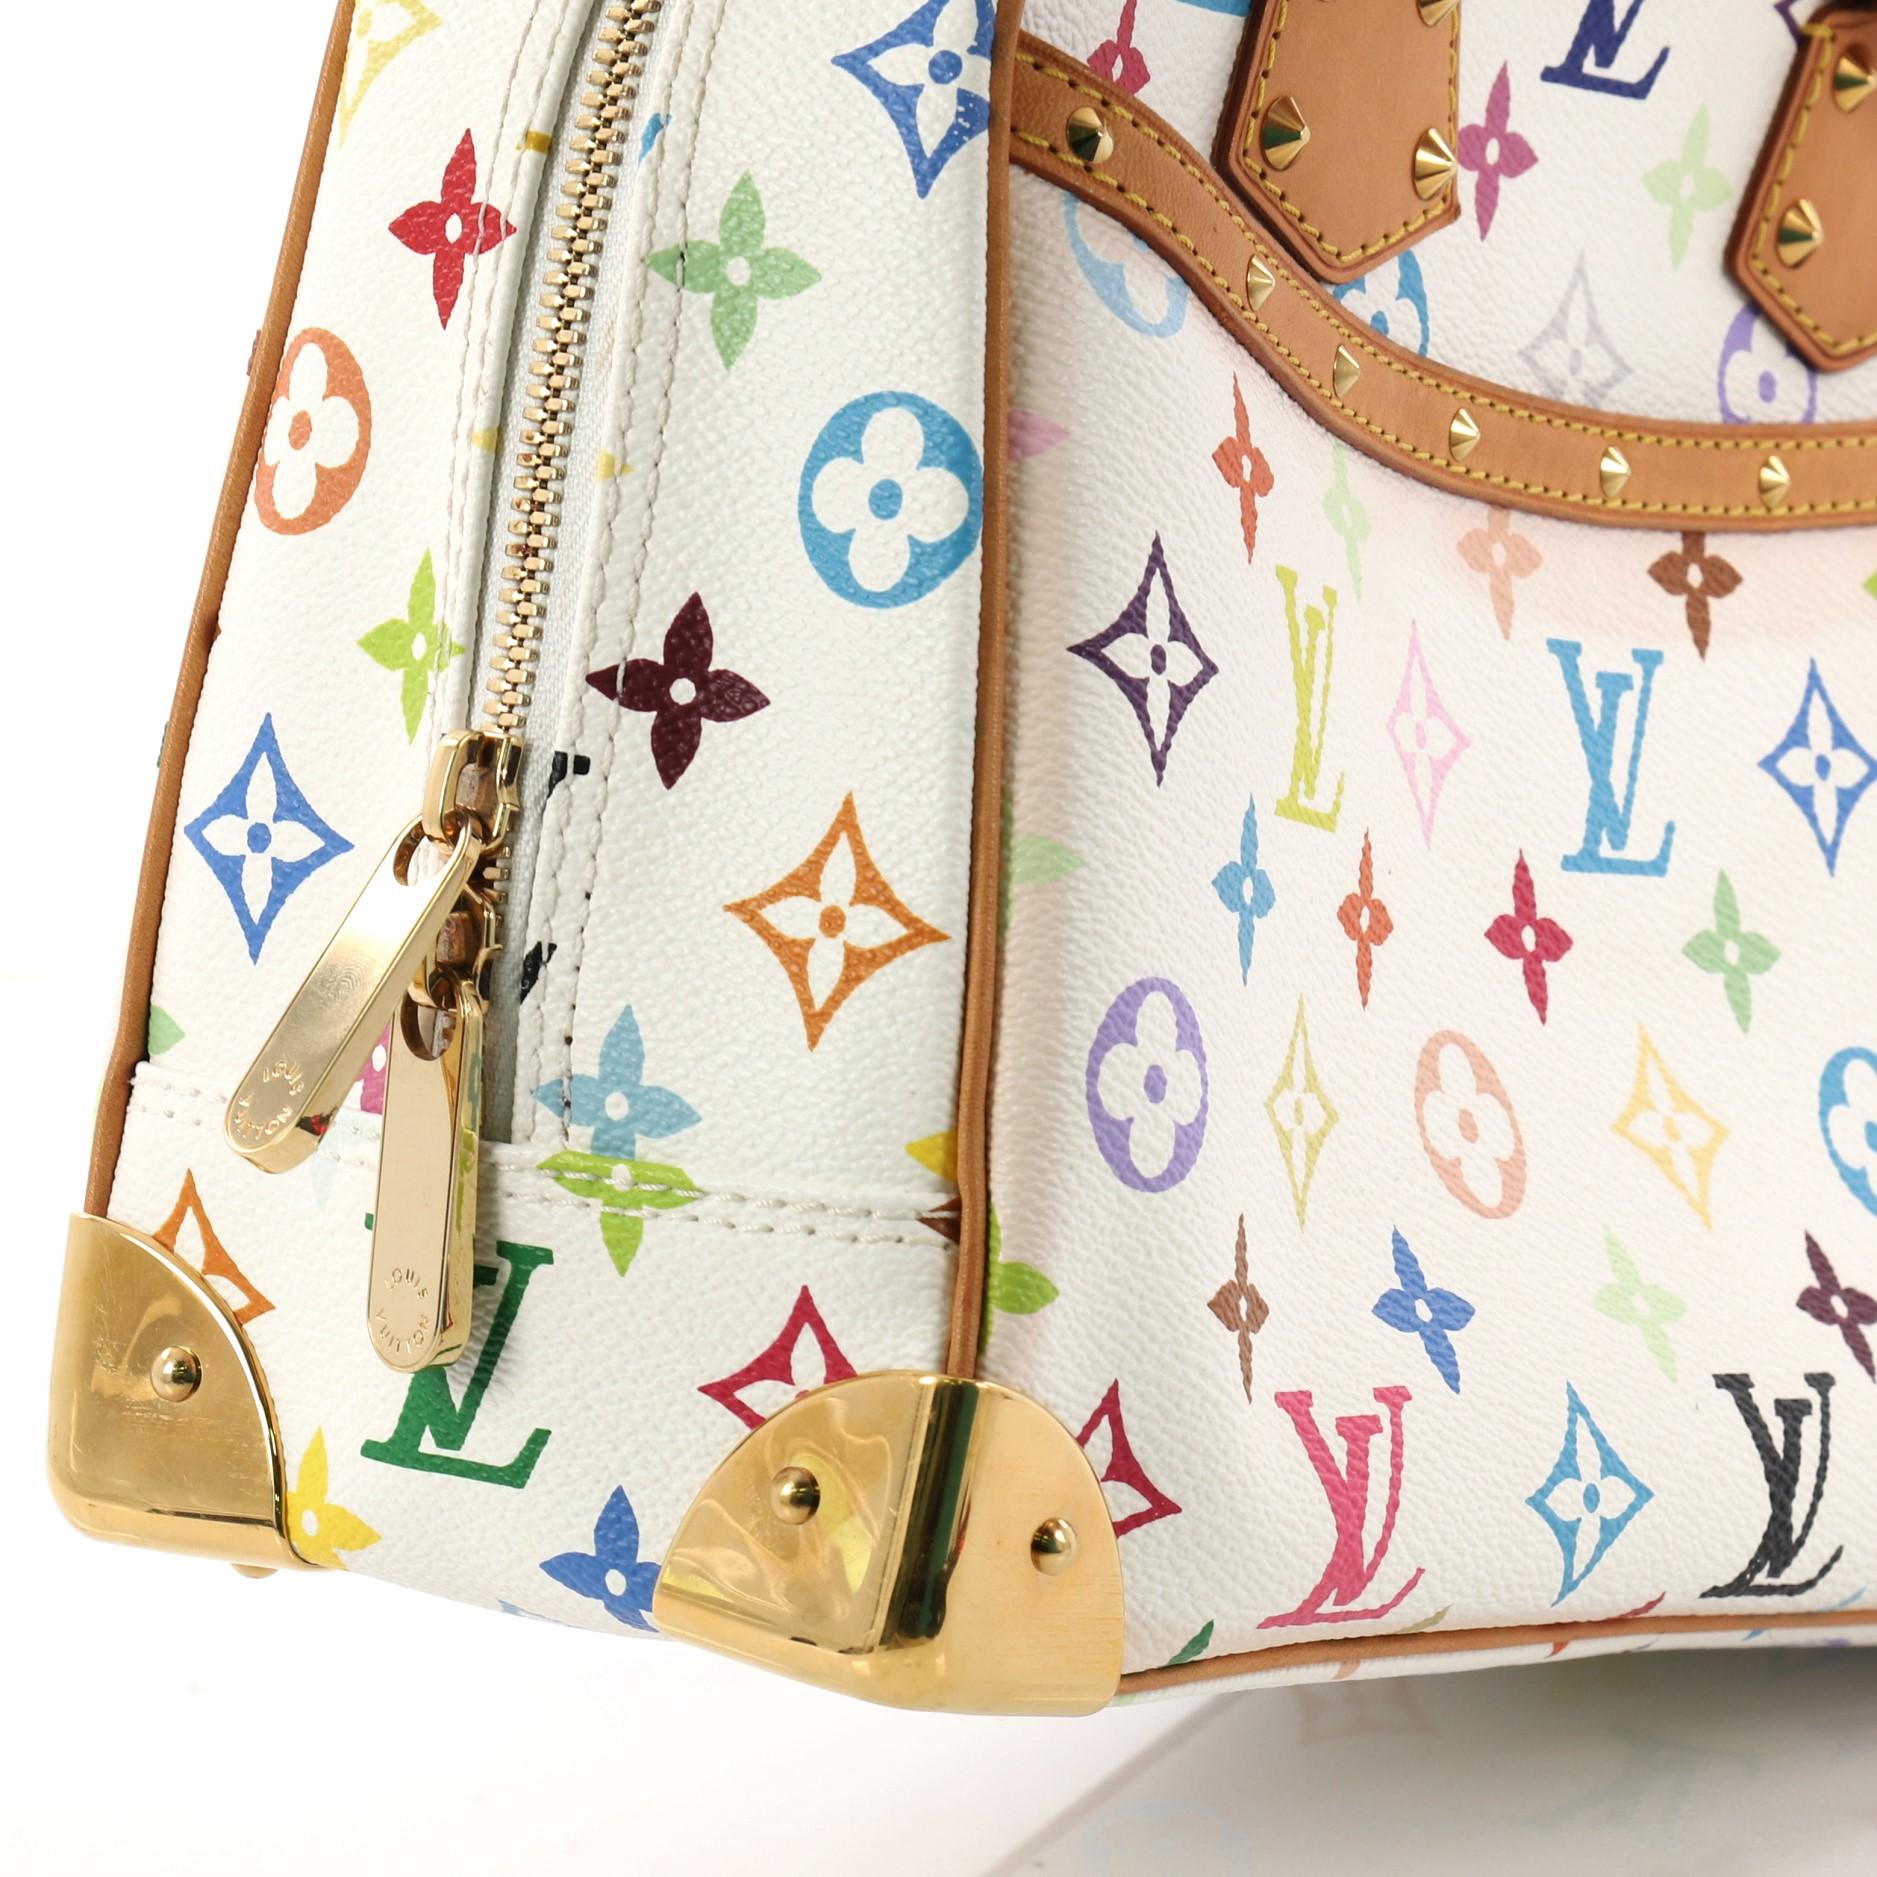  Louis Vuitton Trouville Handbag Monogram Multicolor i 1